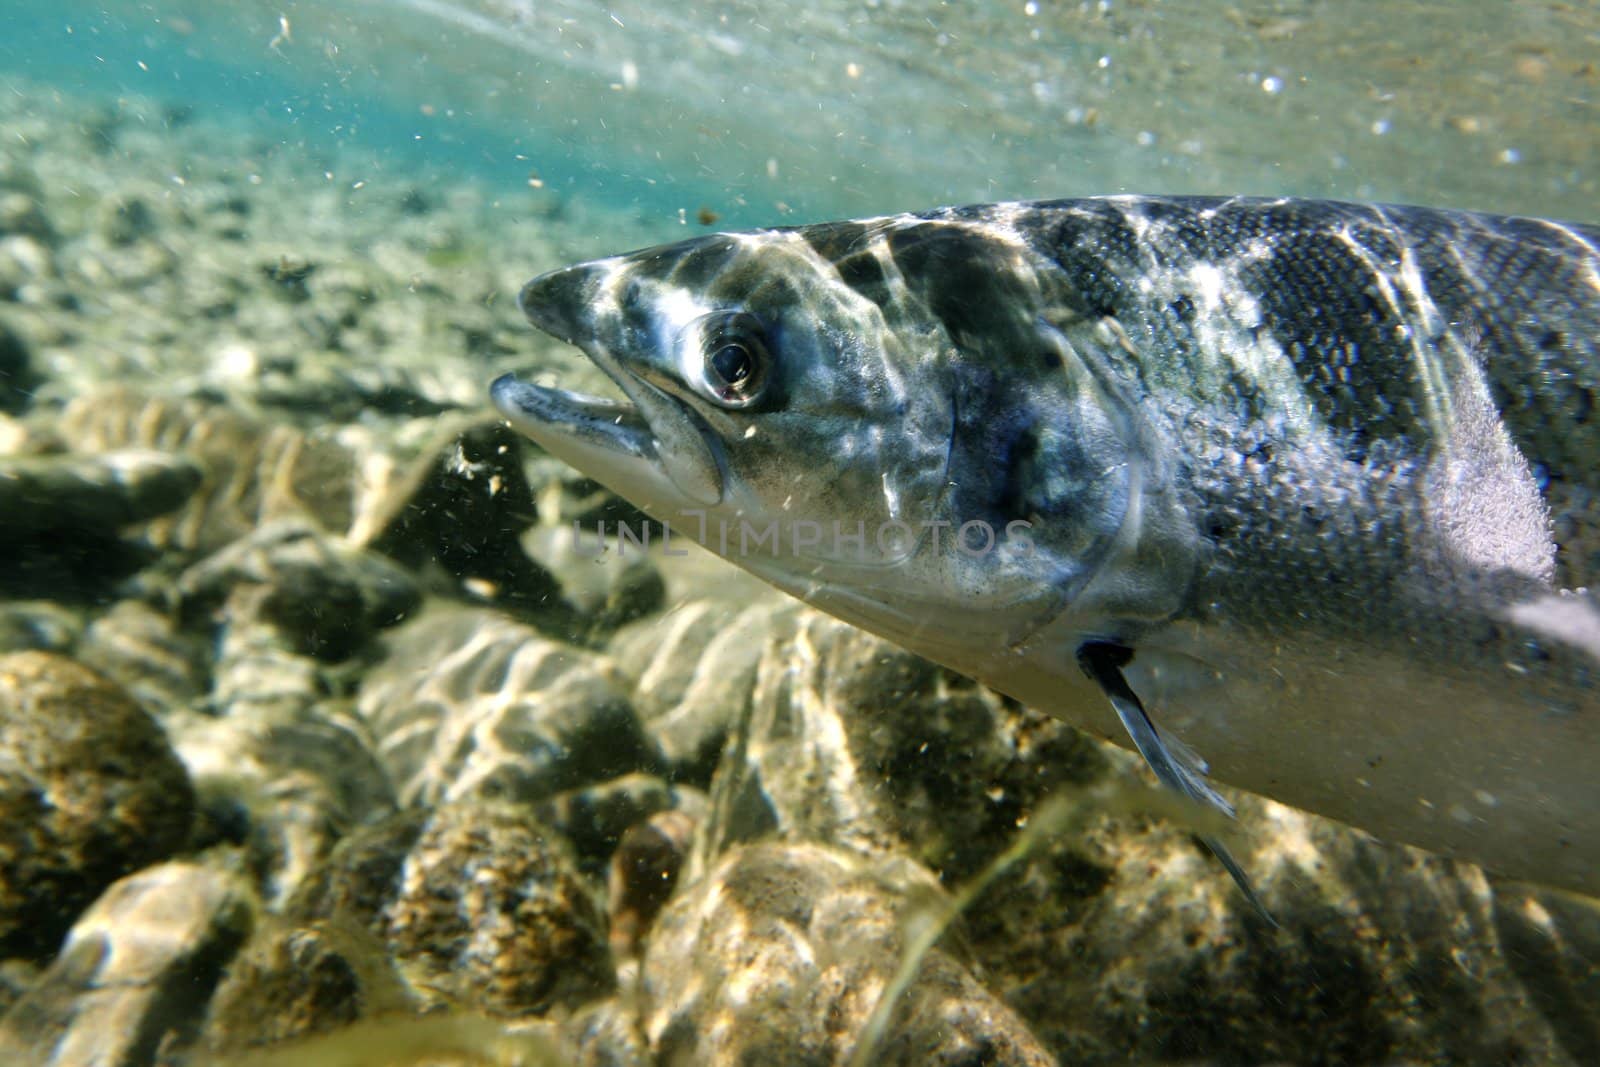 Unique shot of the atlantic salmon in its natural habitat